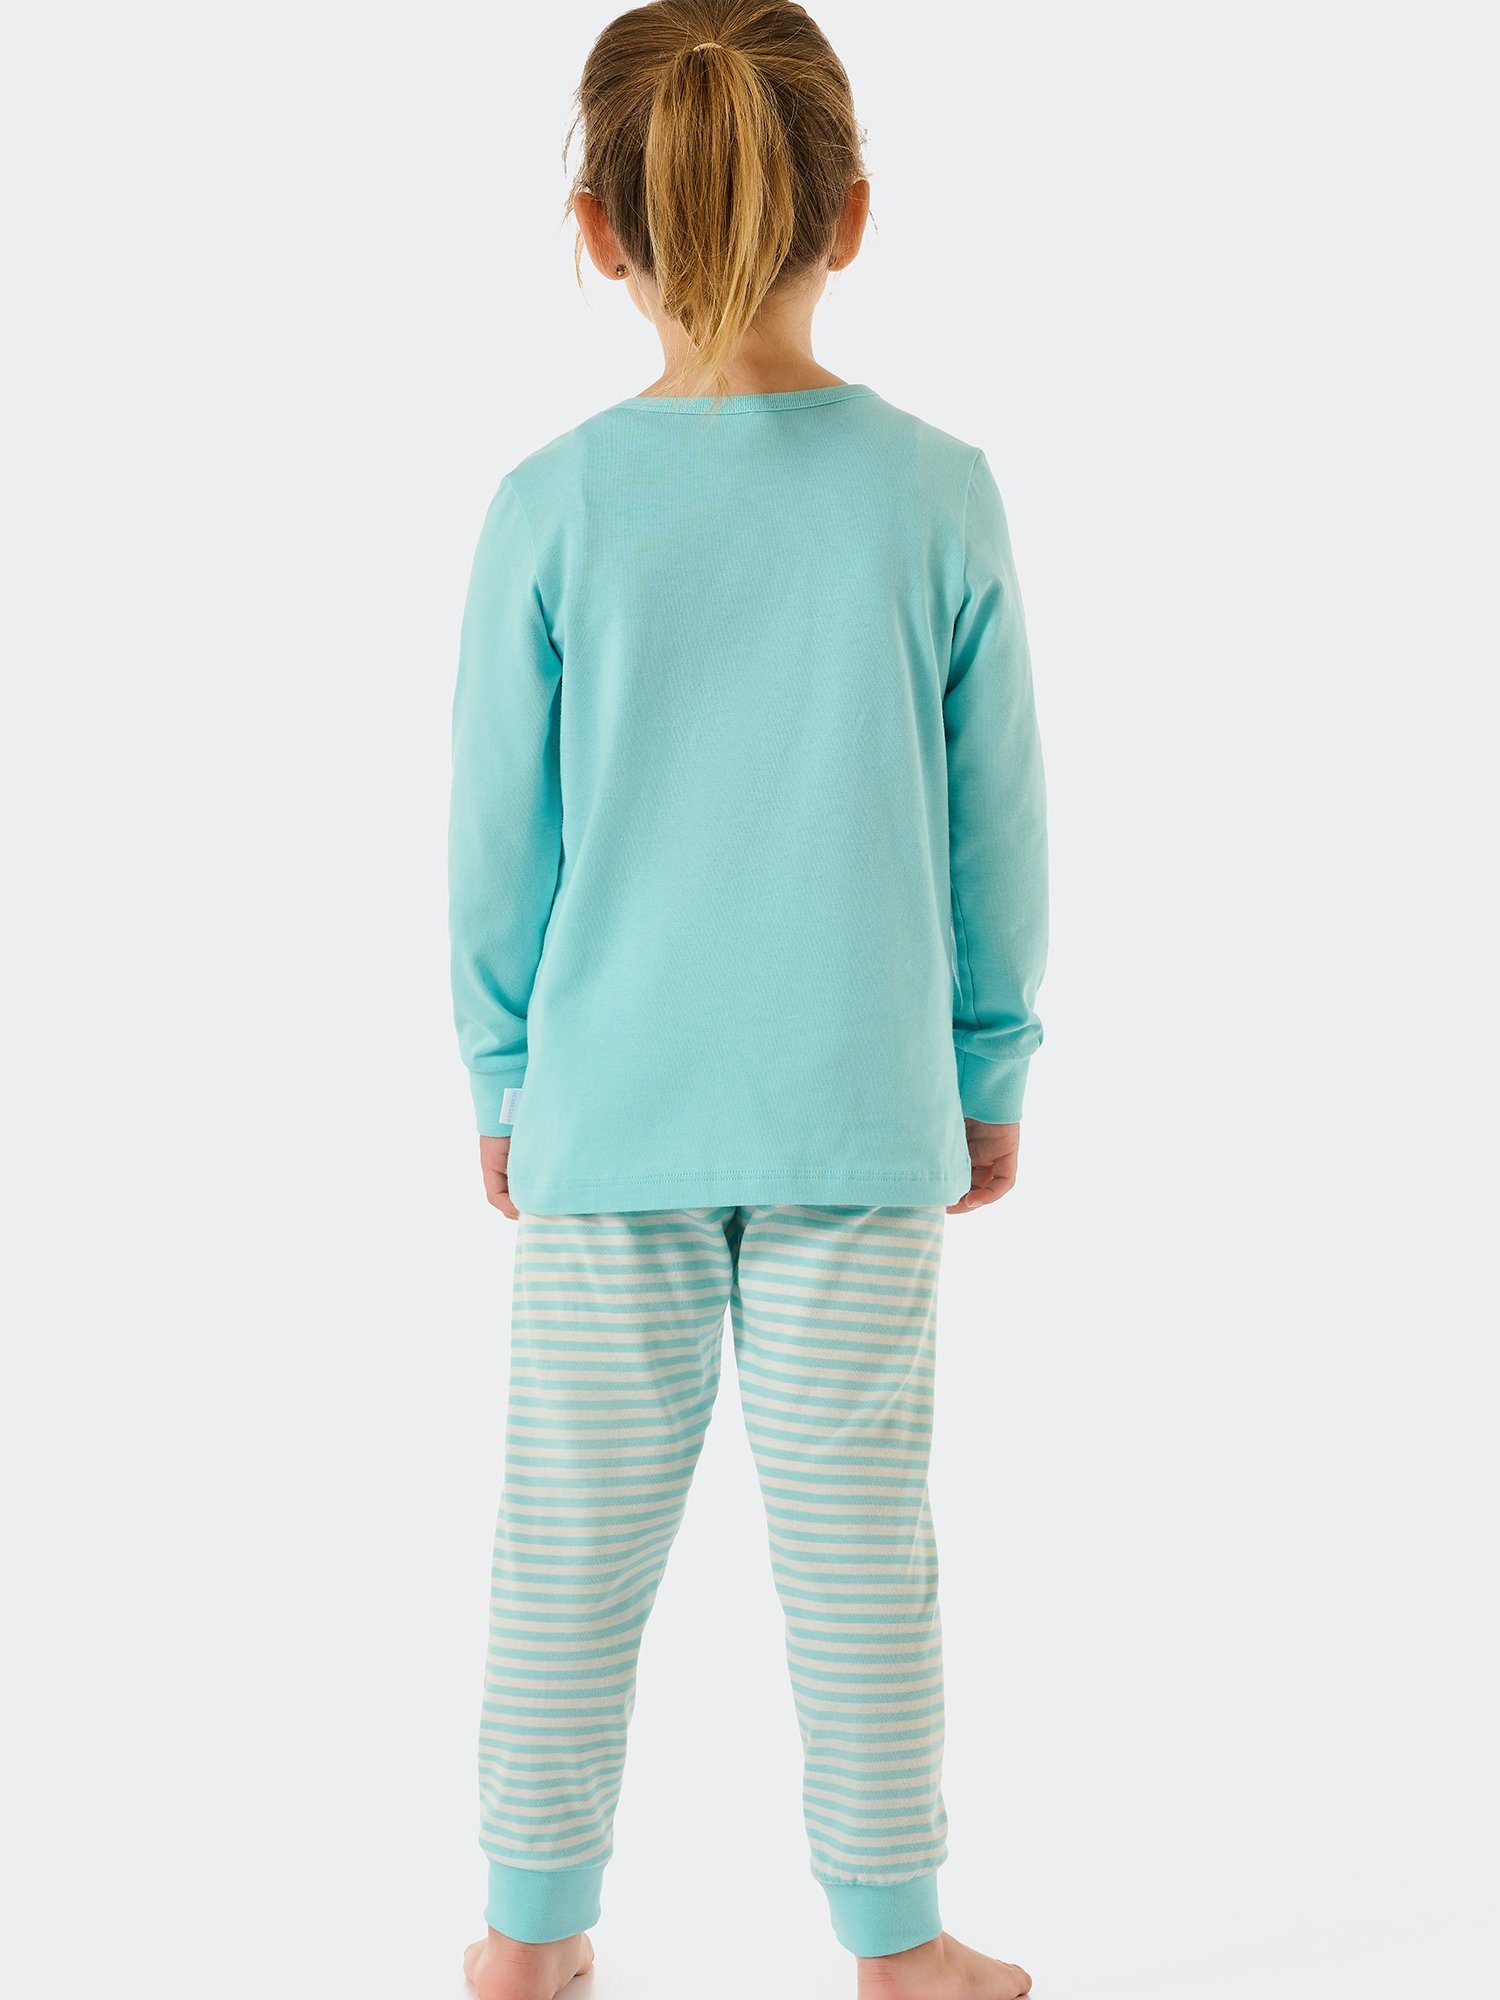 türkis Kids Pyjama Basic Schiesser